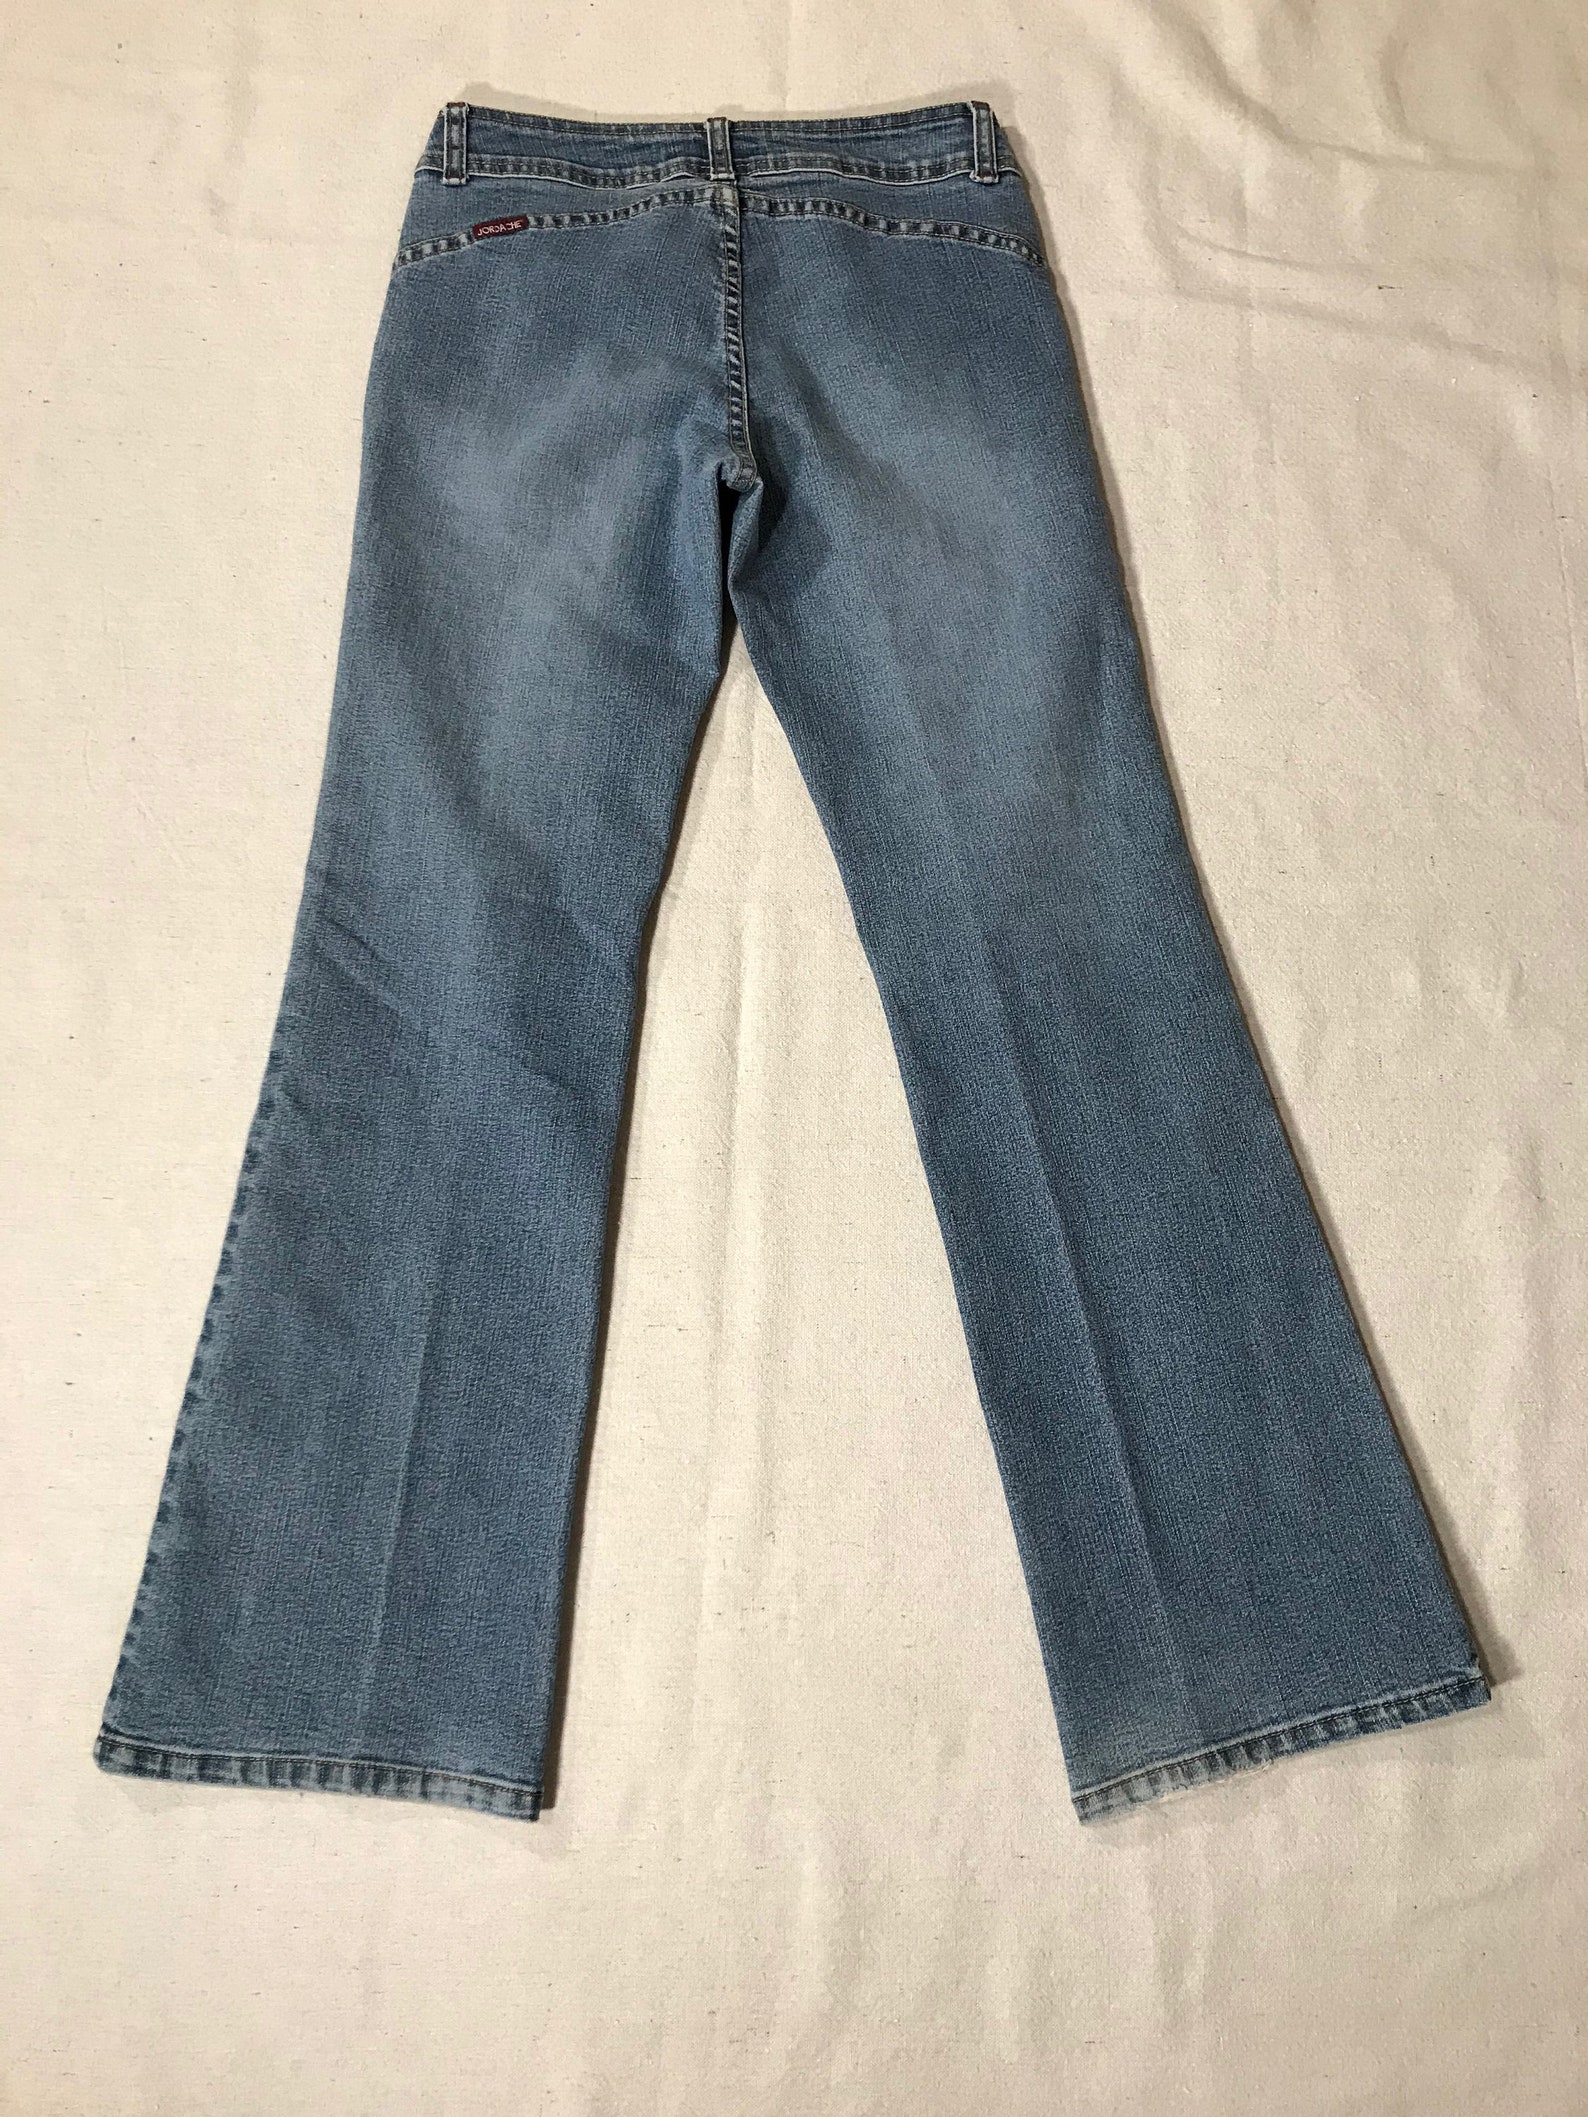 SIZE 7/8 Vintage Jordache Jeans No back pockets Button Fly | Etsy